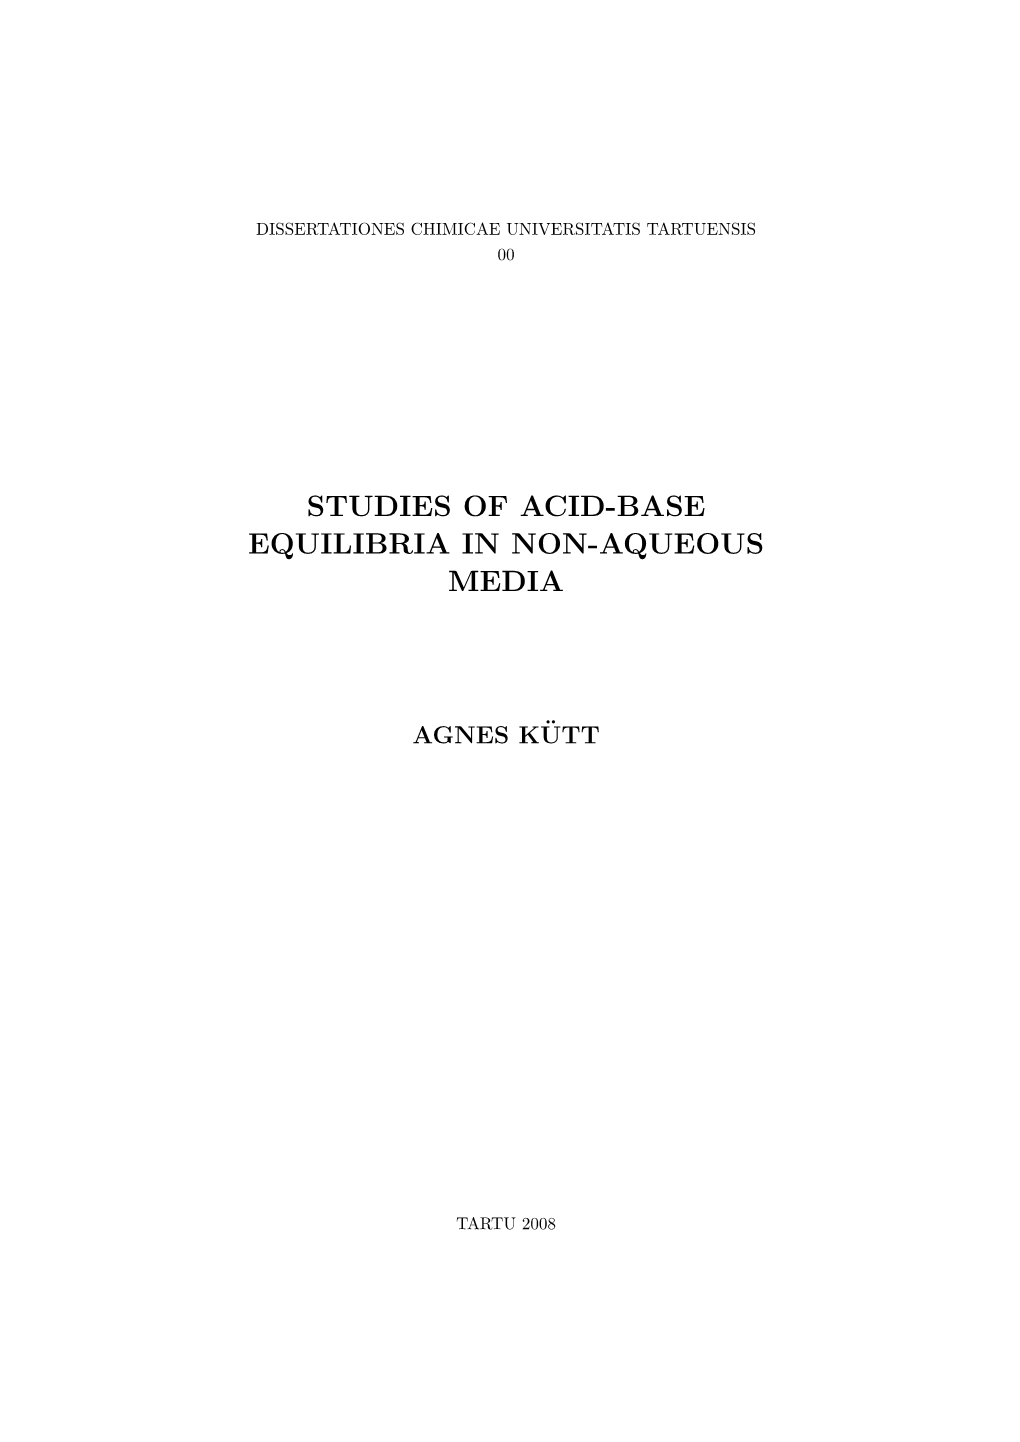 Studies of Acid-Base Equilibria in Non-Aqueous Media